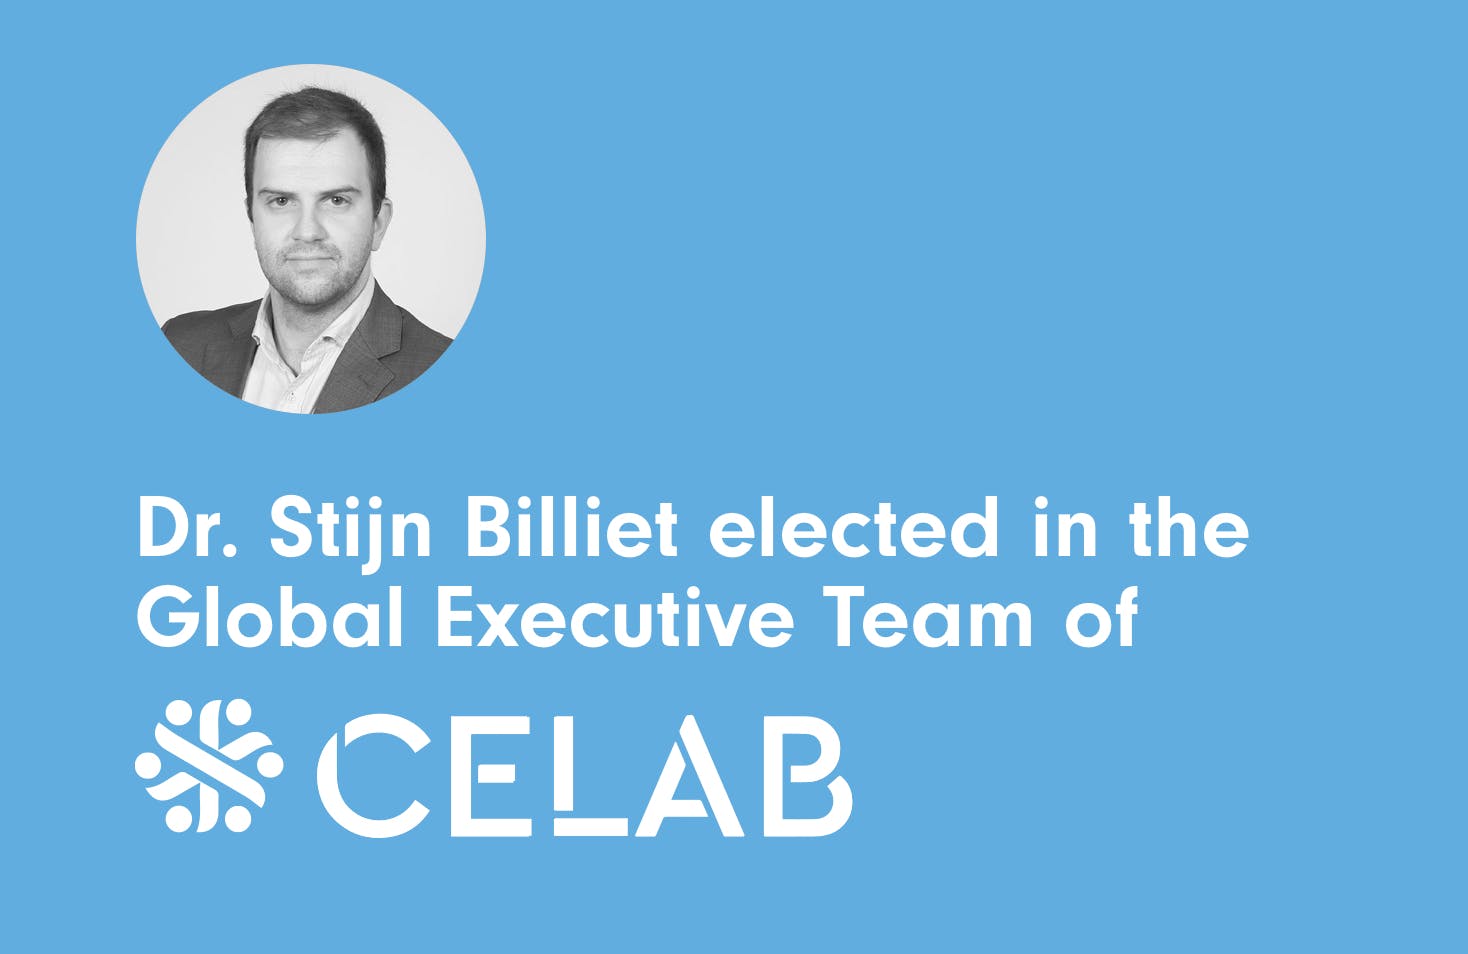 Image of Dr. Stijn Billiet eletto nel Consiglio Esecutivo Globale di CELAB